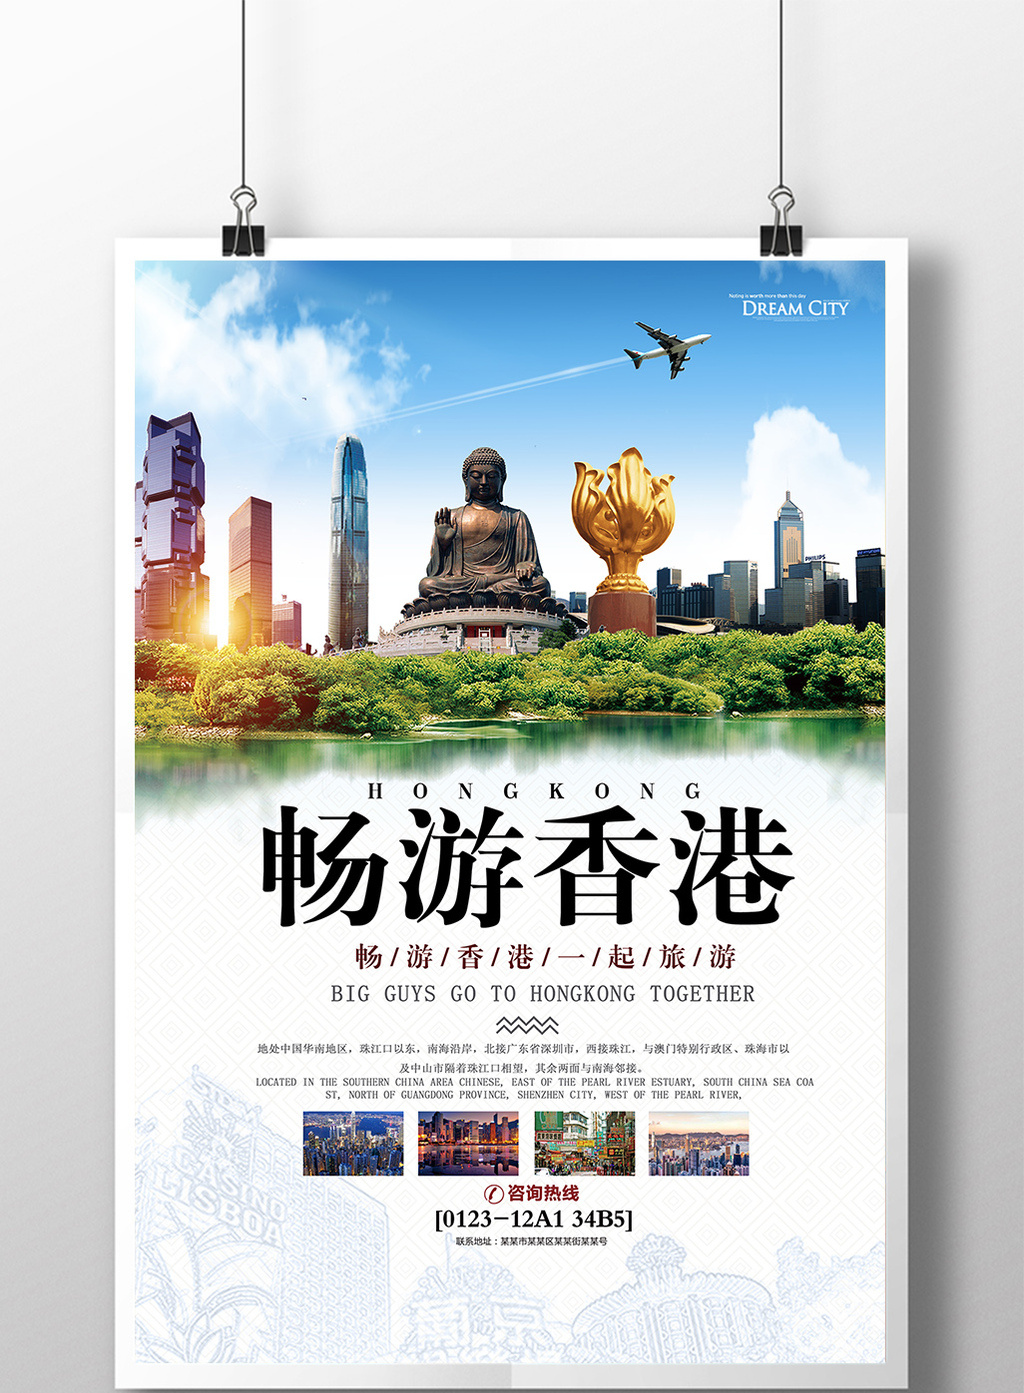 畅游香港香港旅游旅行社宣传海报设计模板免费下载 _广告设计图片设计素材_